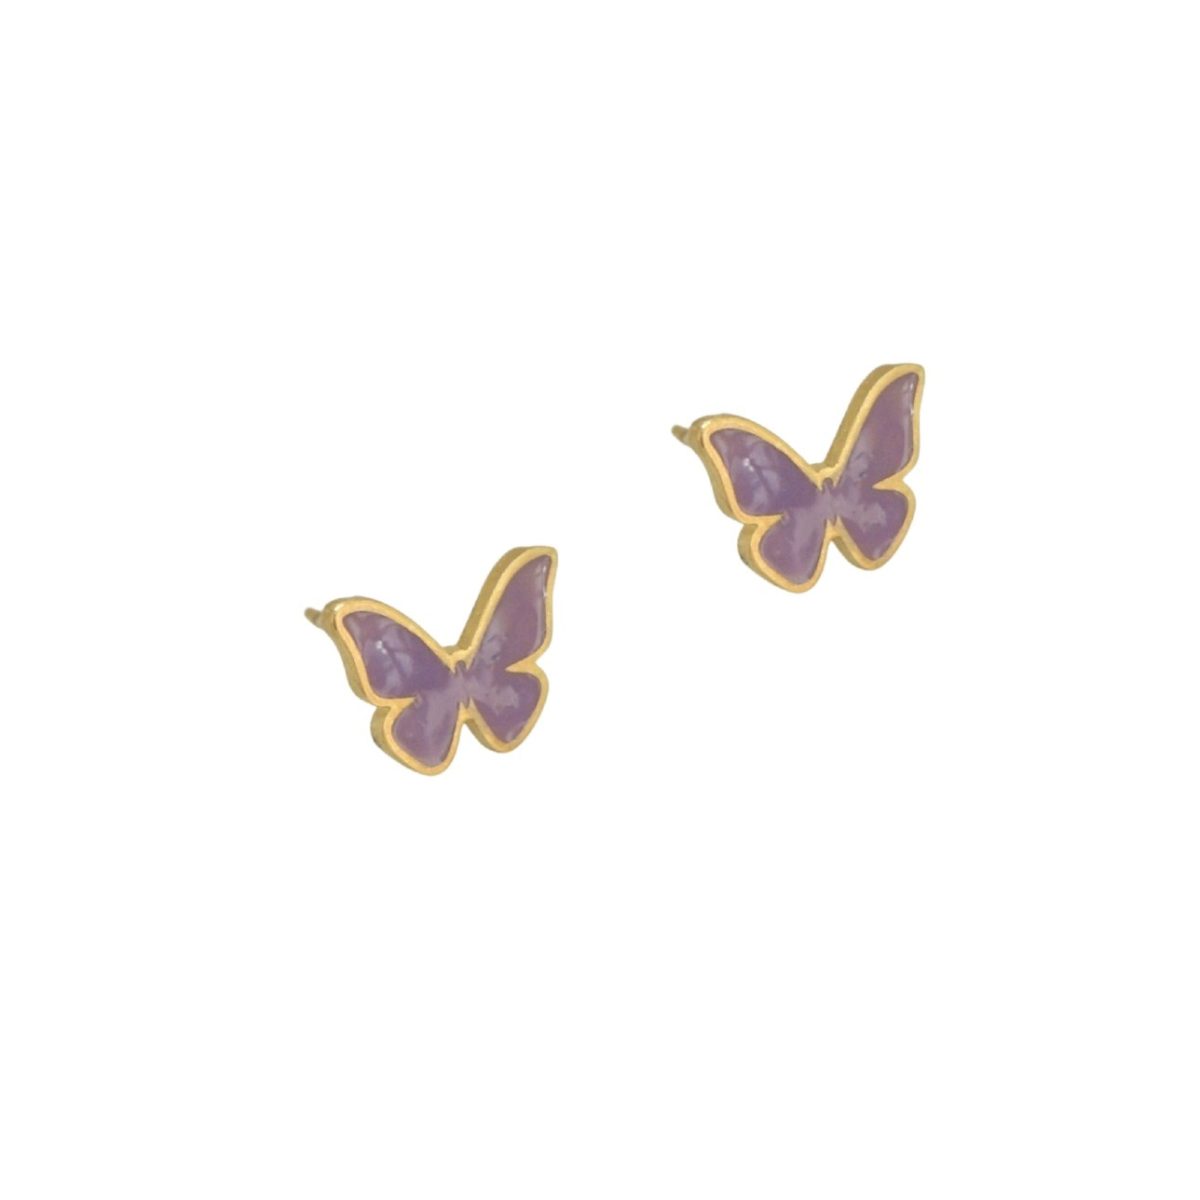 “Butterfly” επίχρυσα σκουλαρίκια “Butterfly” επίχρυσα σκουλαρίκια “Butterfly” επίχρυσα σκουλαρίκια 4